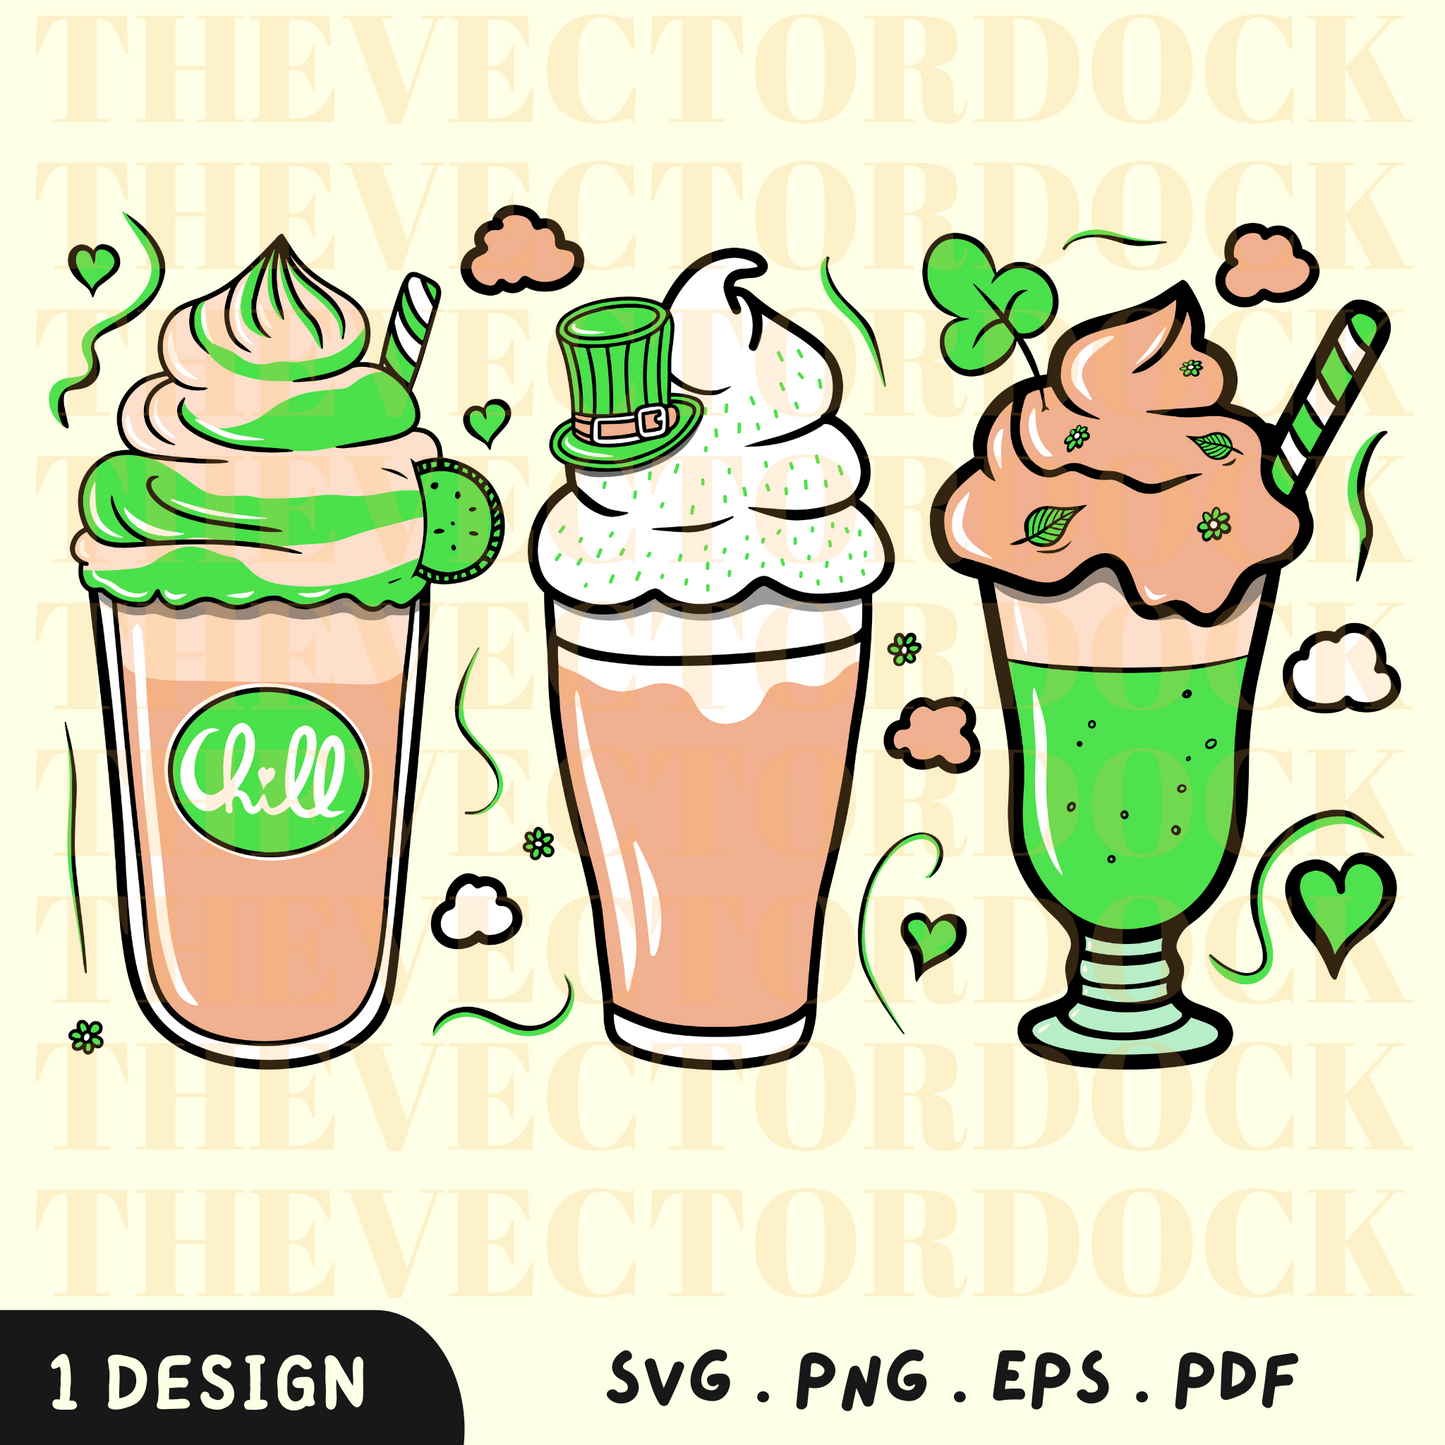 St. Patrick's Milkshakes SVG Design, St. Patrick's Milkshakes SVG, St. Patrick's Day, St. Patrick's Milkshakes Vector